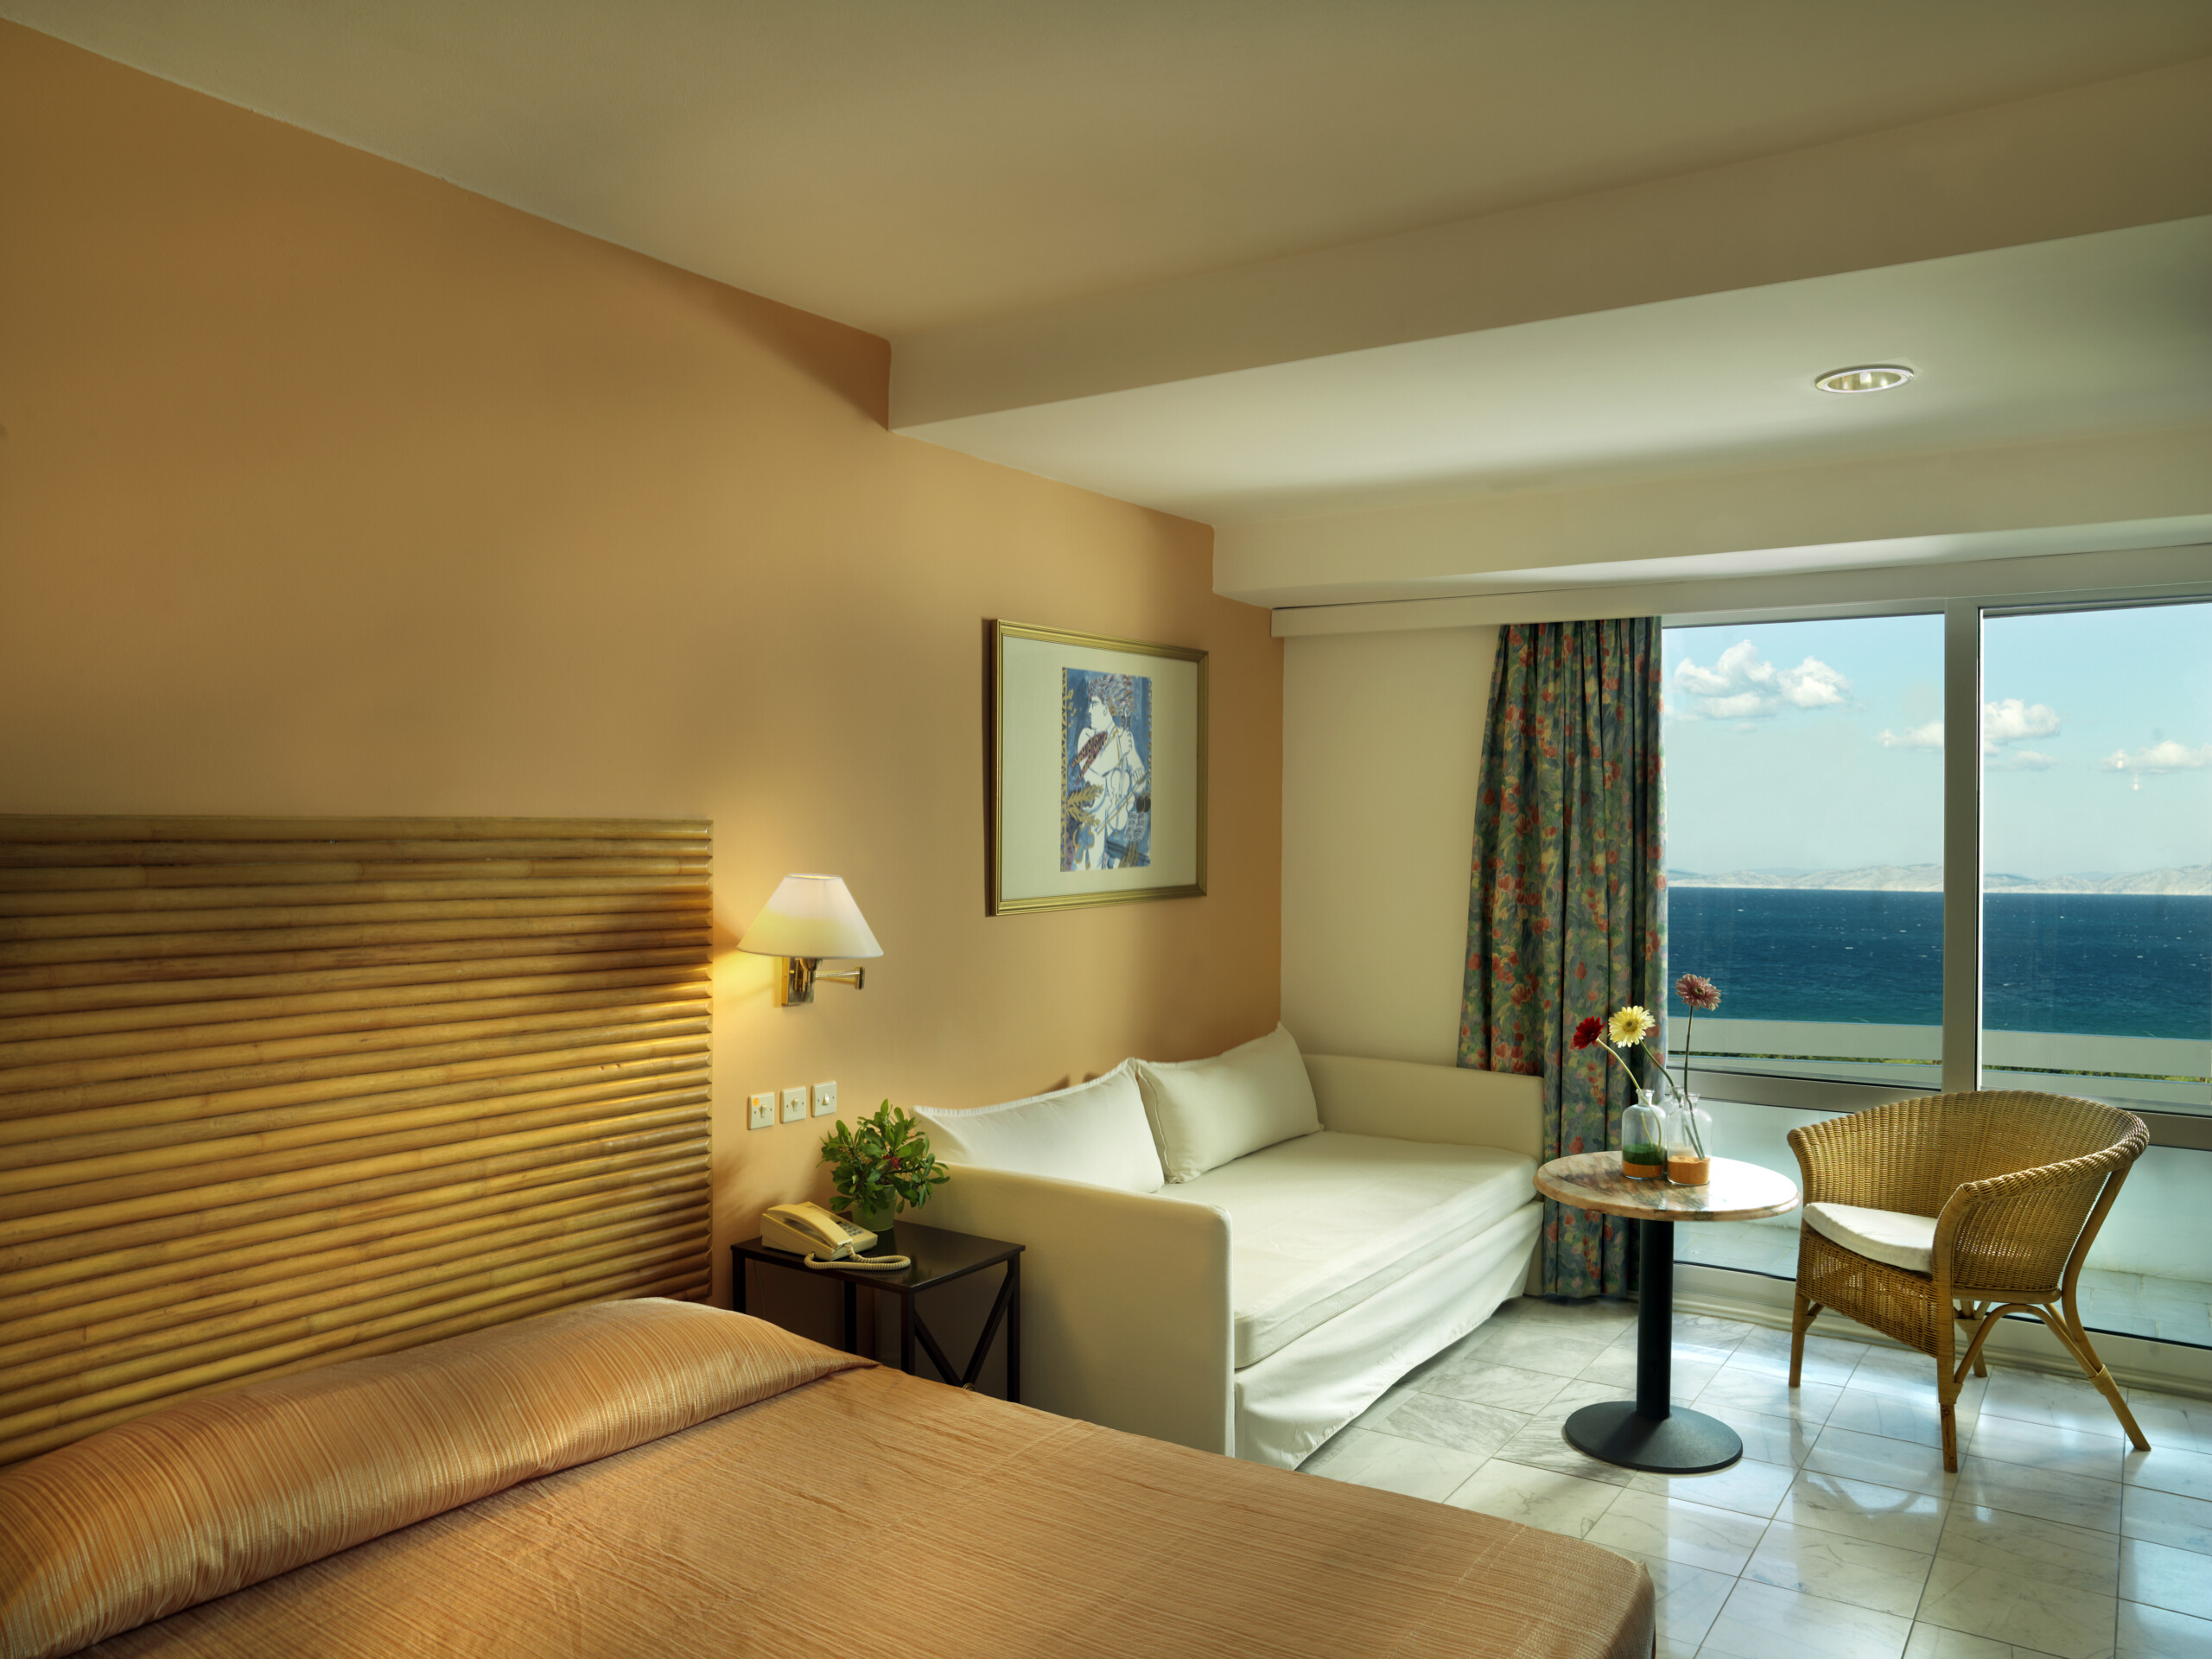 Γοητευτική εικόνα ενός δωματίου στο ξενοδοχείο Dionysos, με το κρεβάτι, το καθιστικό και το μπαλκόνι με θέα στη θάλασσα.